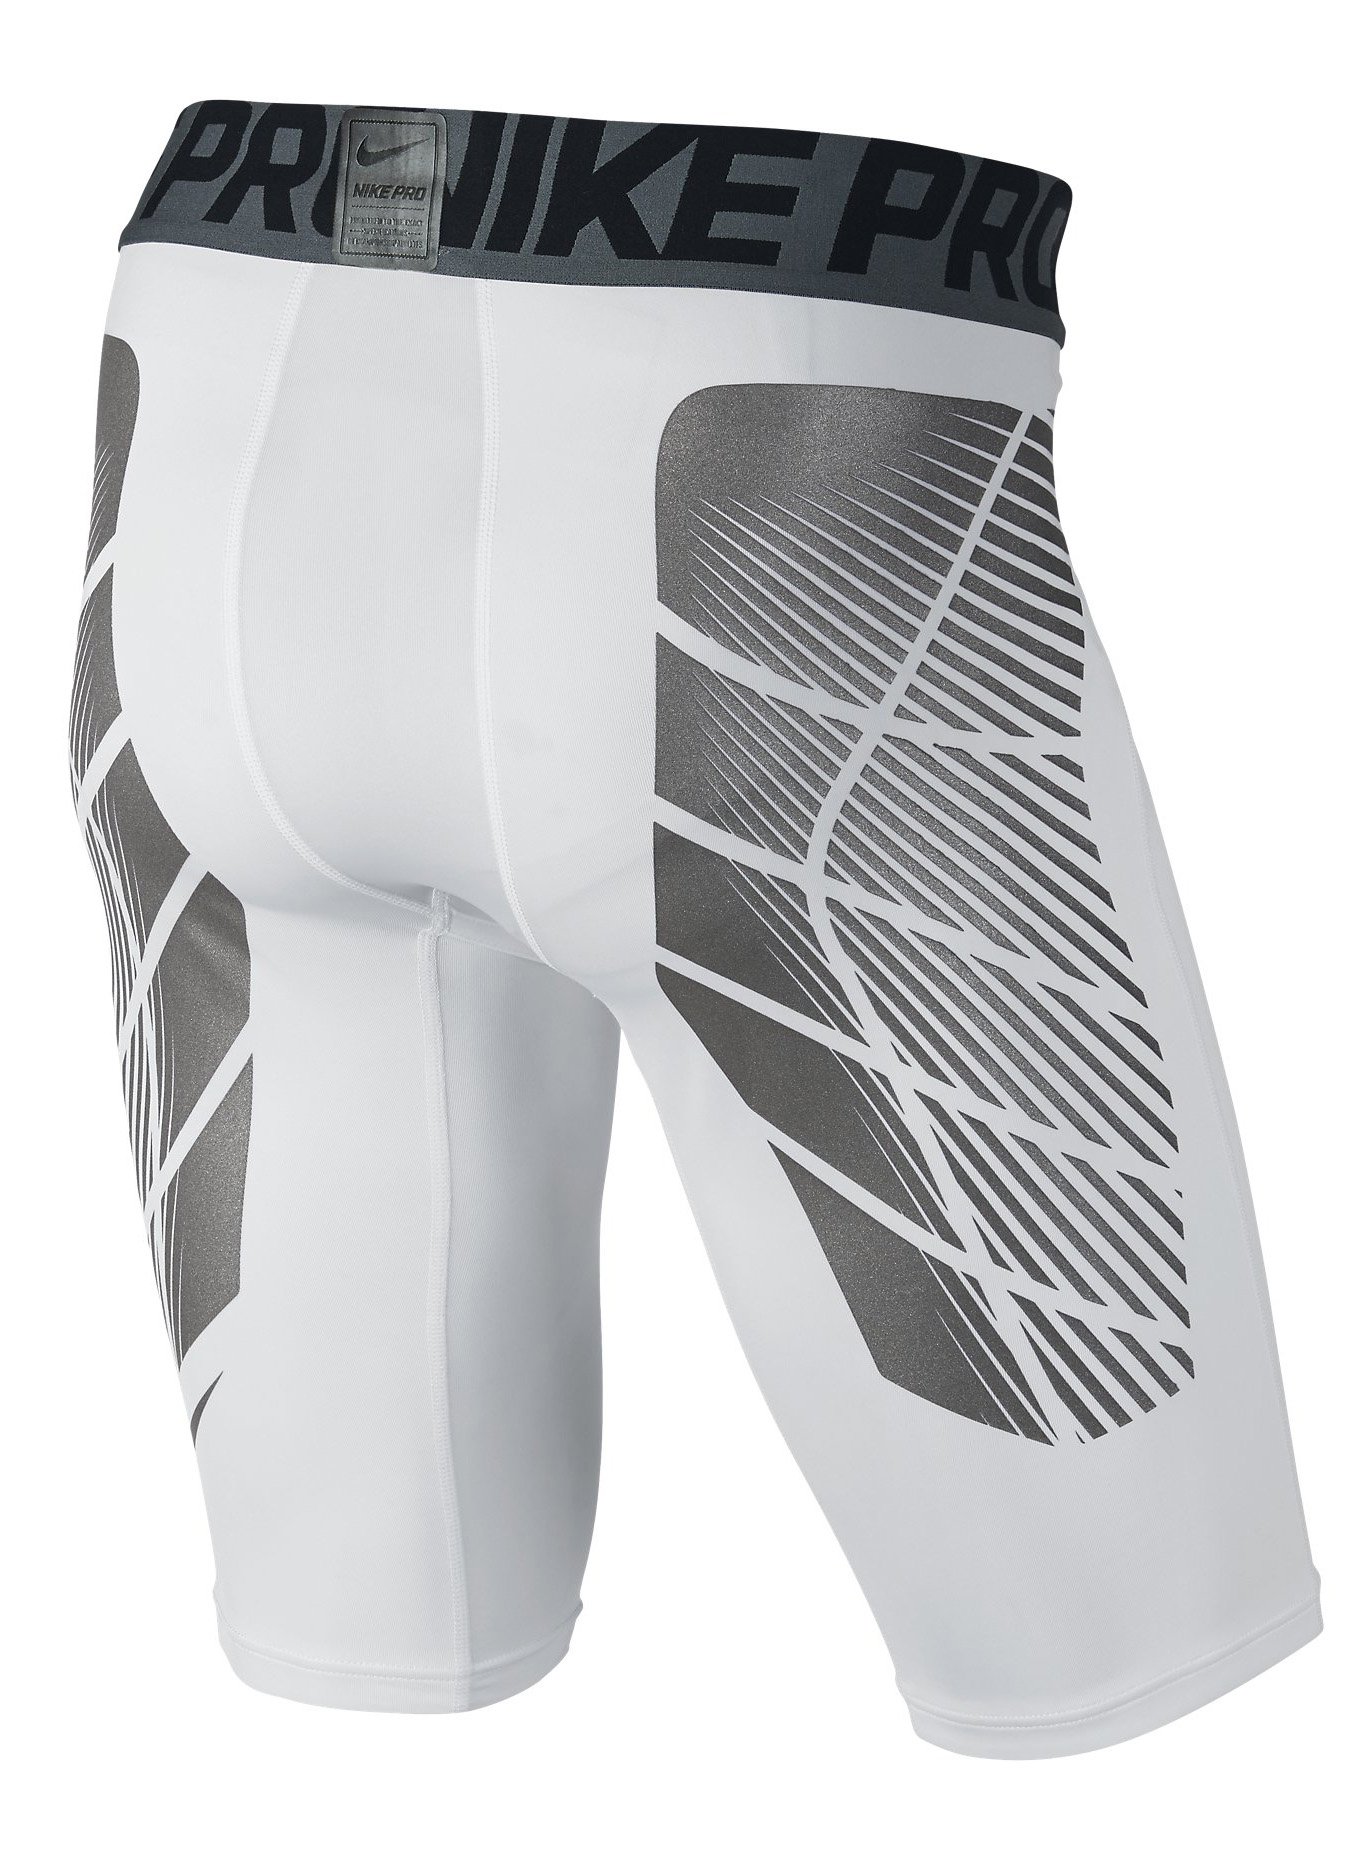 Pantalon corto compresión Nike FC SHORT -